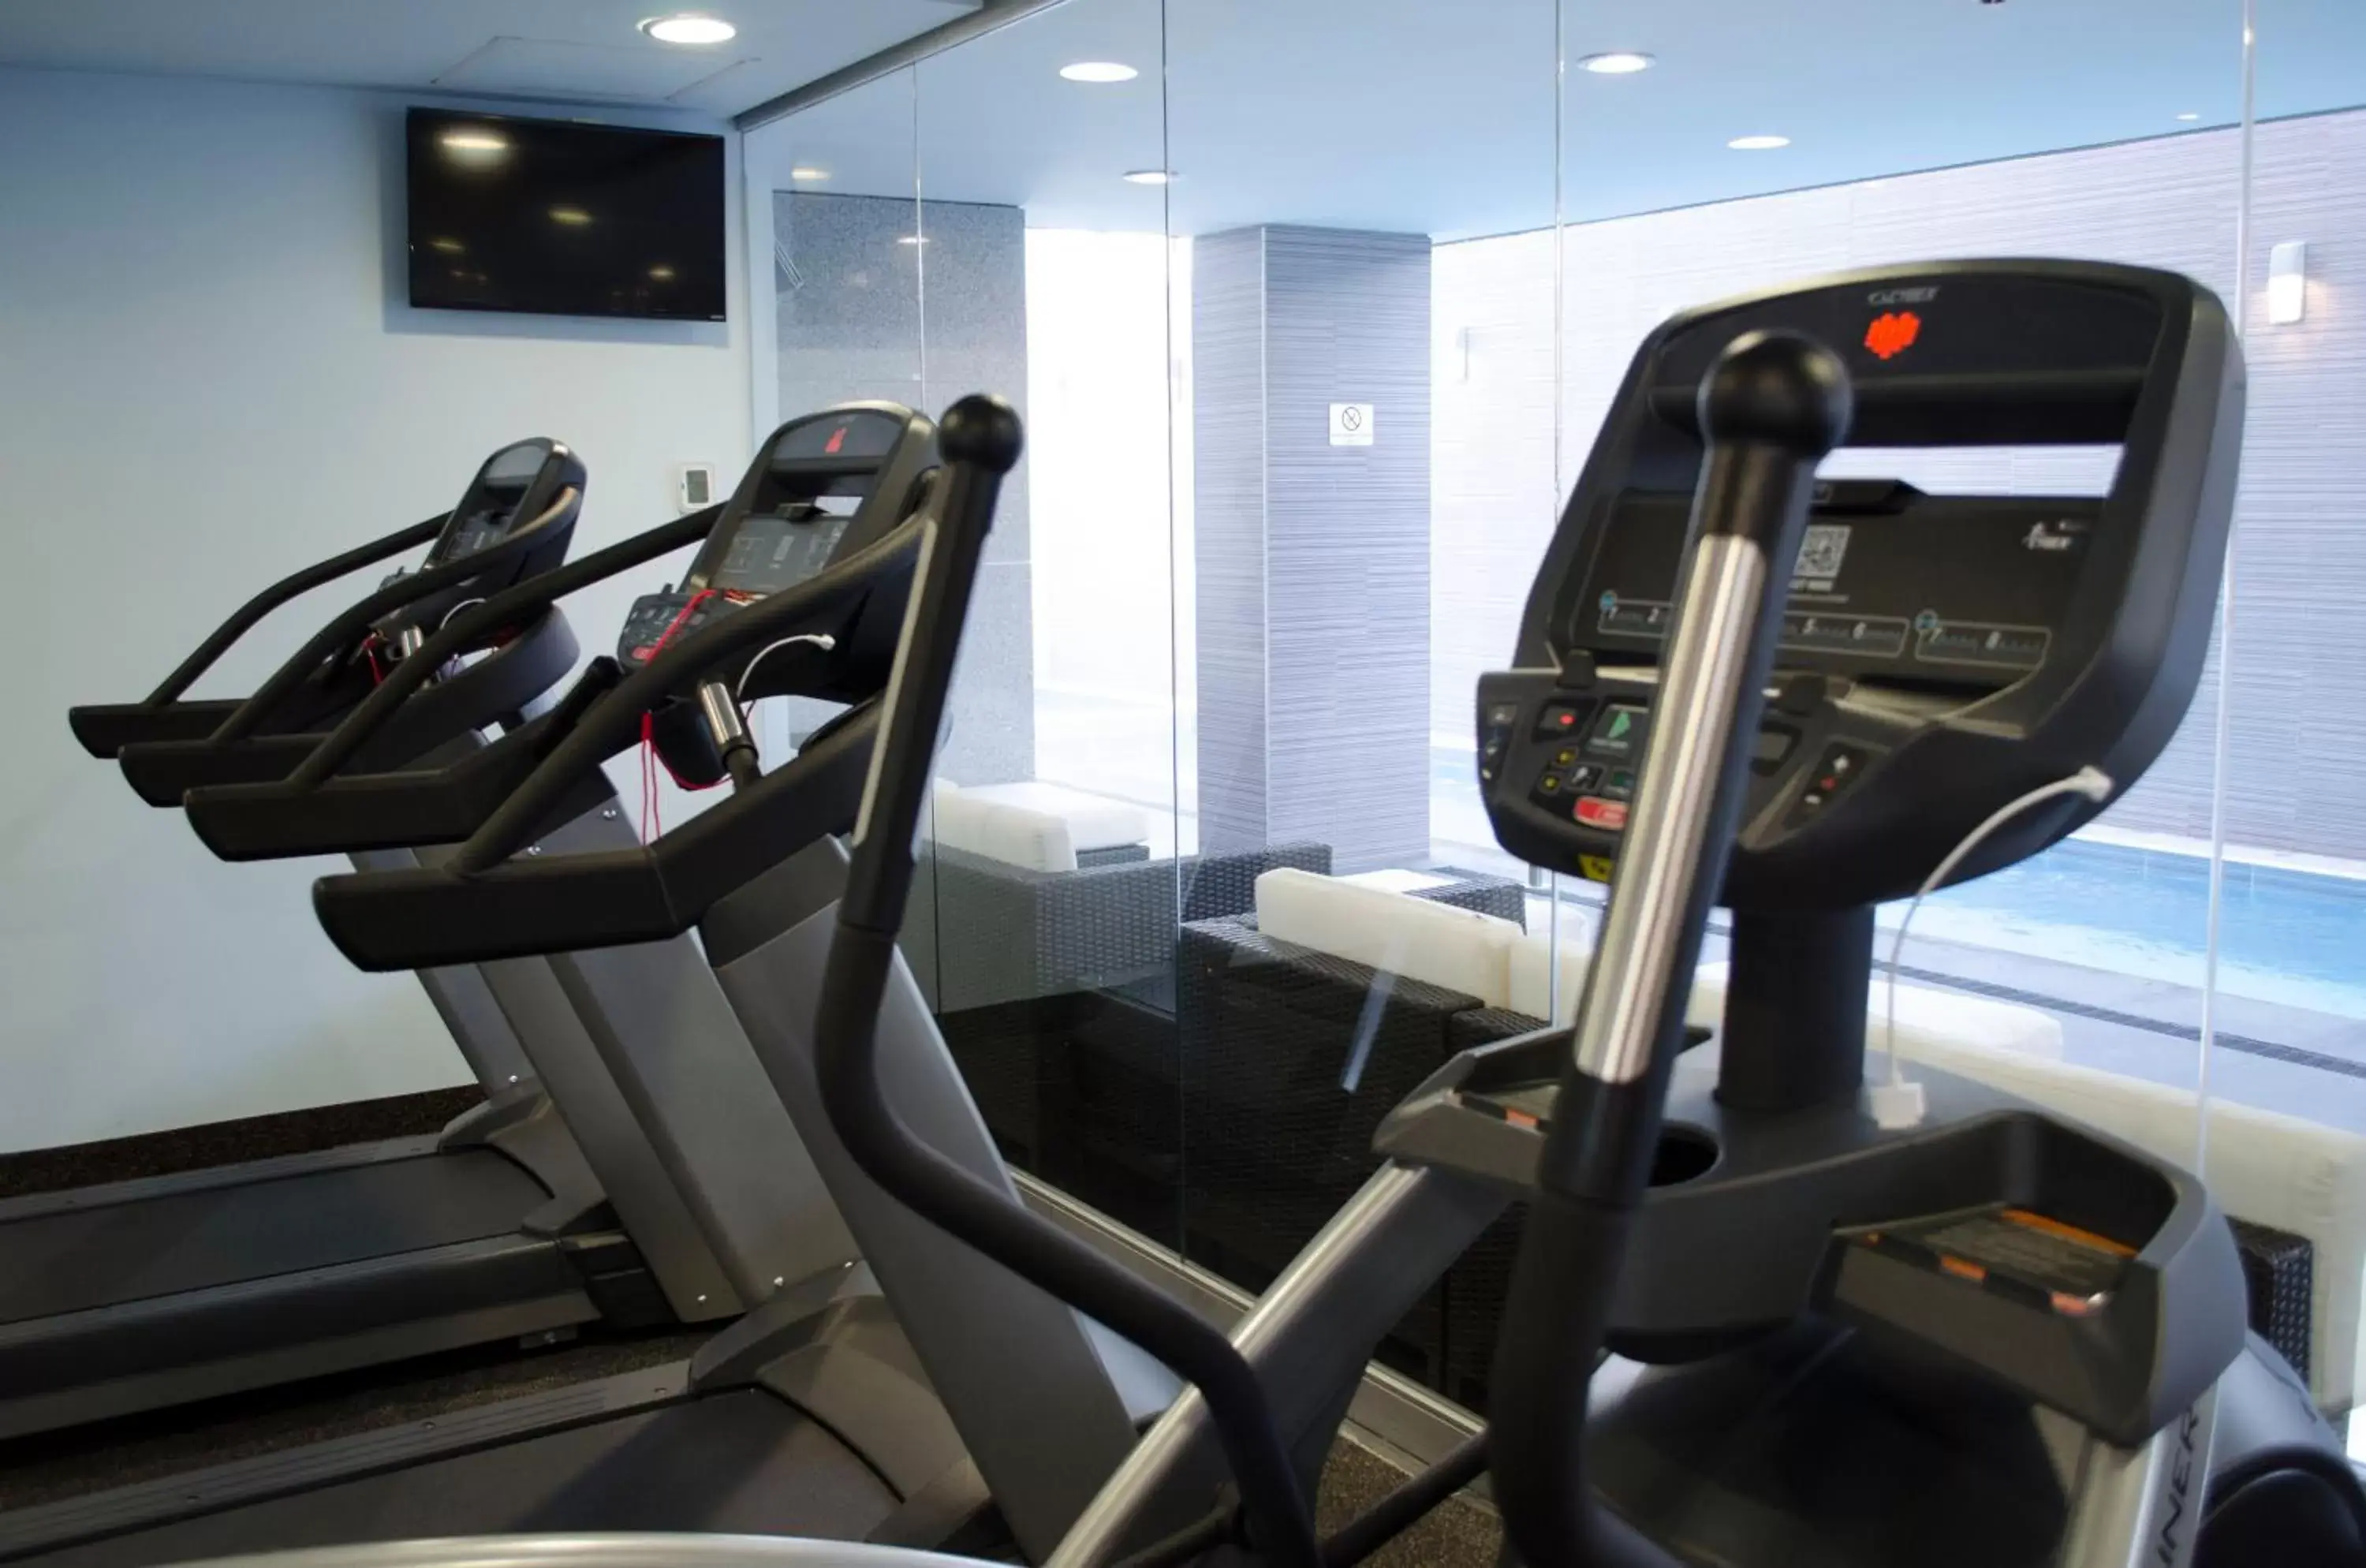 Fitness centre/facilities, Fitness Center/Facilities in Casa Inn Galerias Celaya